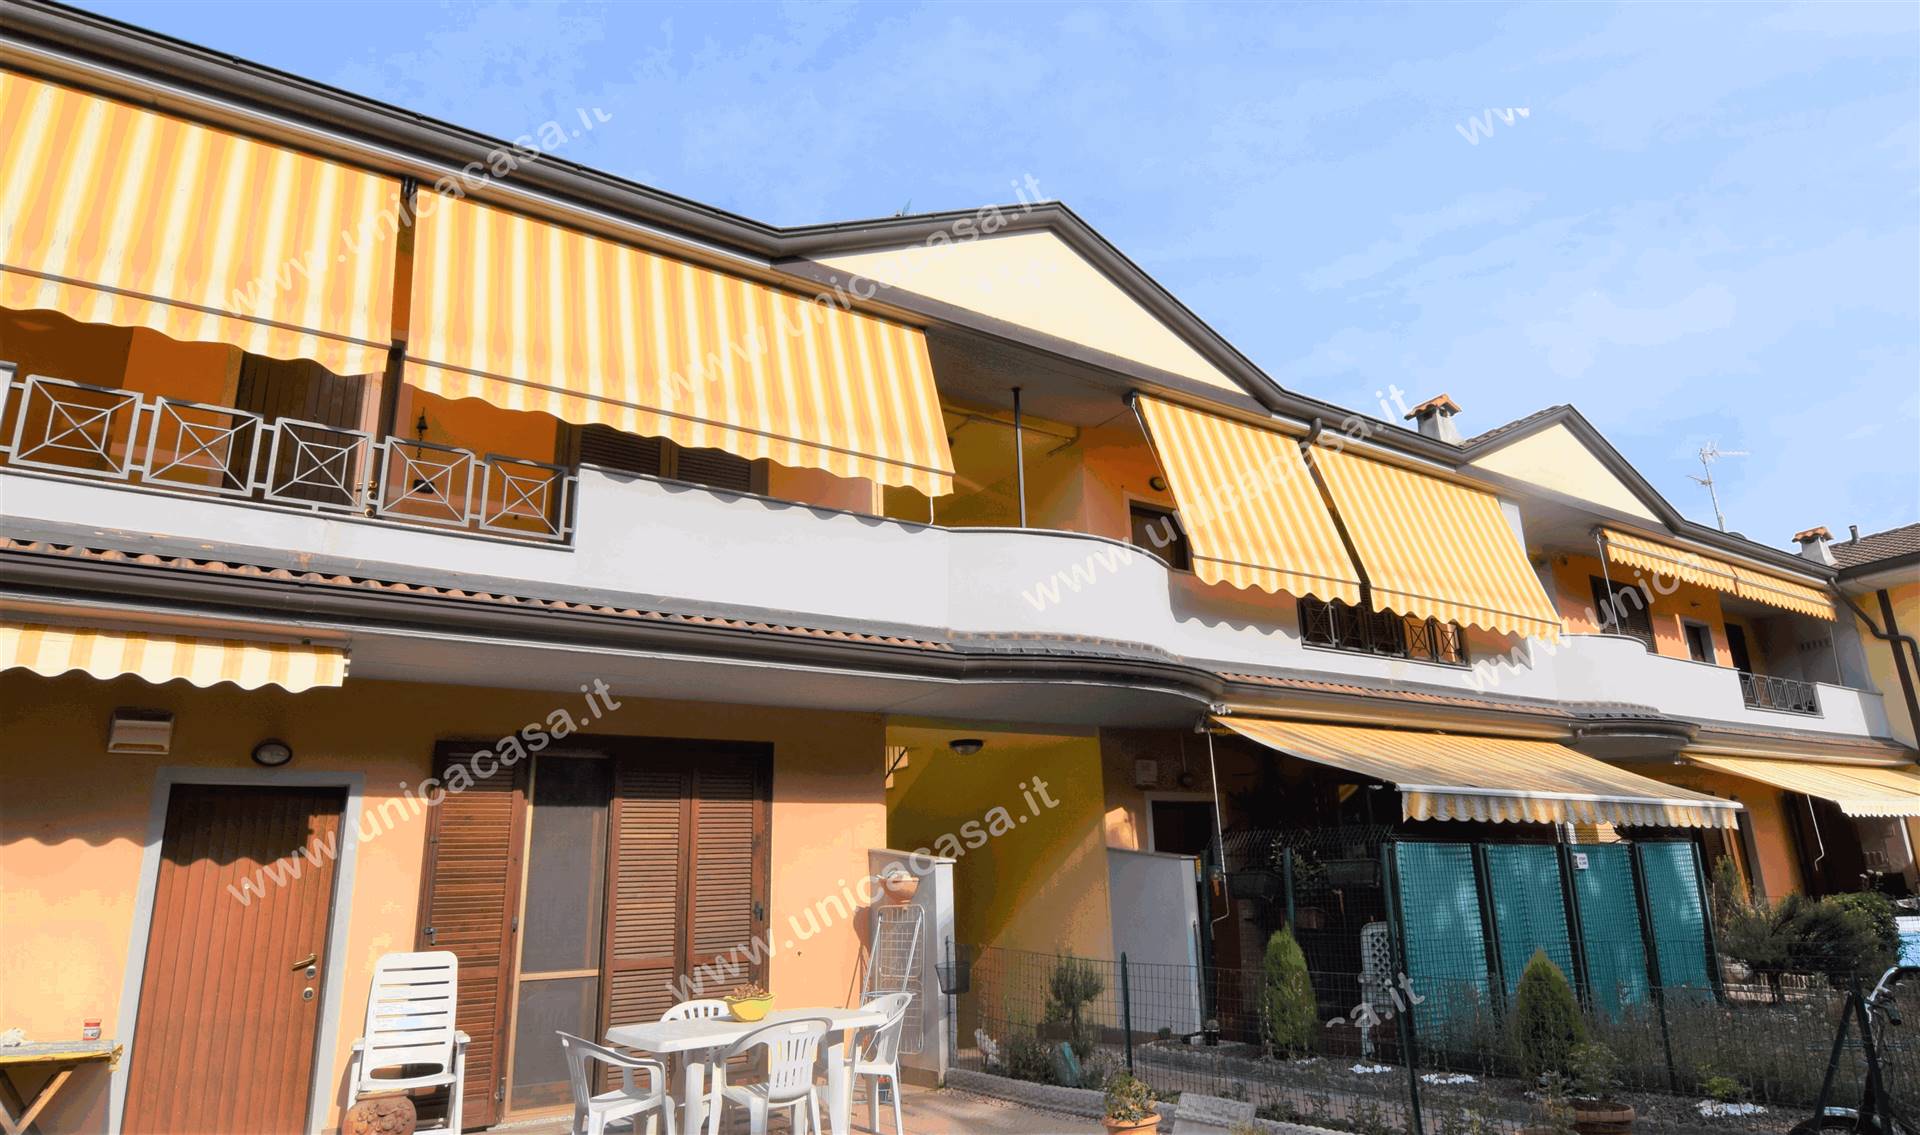 Appartamento in vendita a Arcene, 3 locali, prezzo € 100.000 | CambioCasa.it